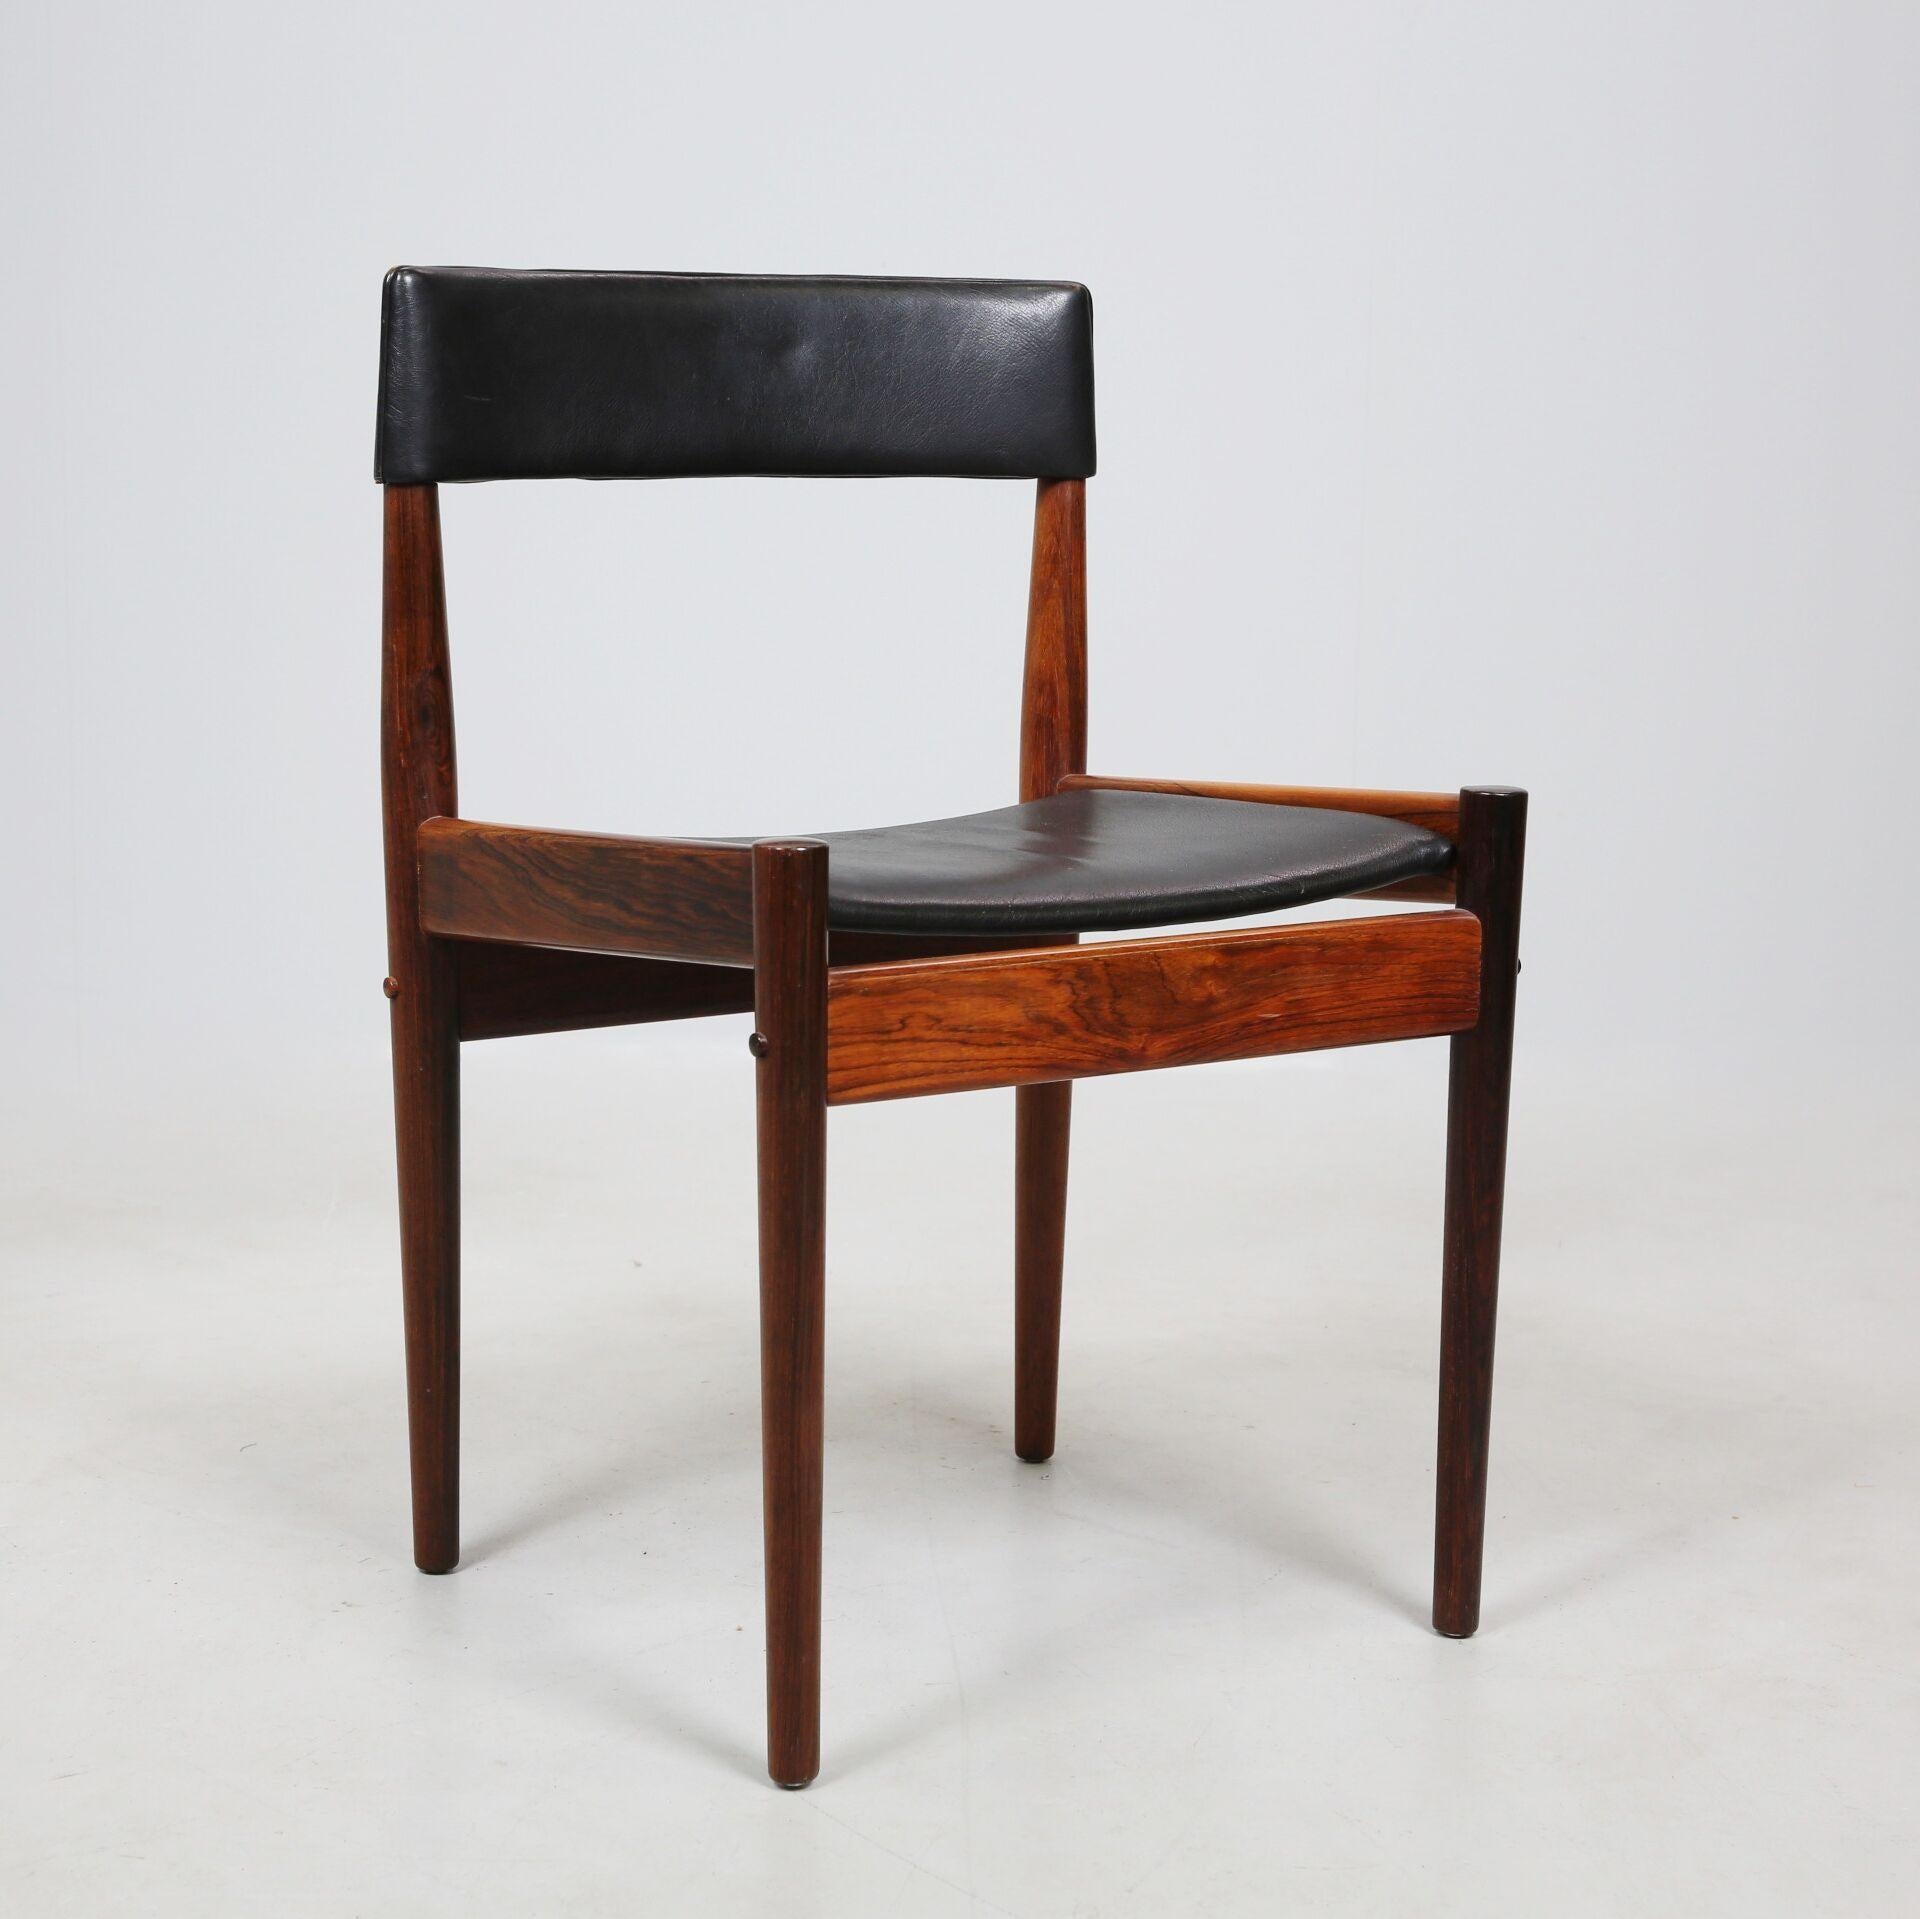 D'élégantes chaises en bois de rose massif et en cuir noir de la femme designer Grete Jalk. Produit dans les années 60 par l'ébéniste Poul Jeppessens. Nous avons 4 chaises disponibles et une table. 8 chaises supplémentaires sans cuir sur le dossier,